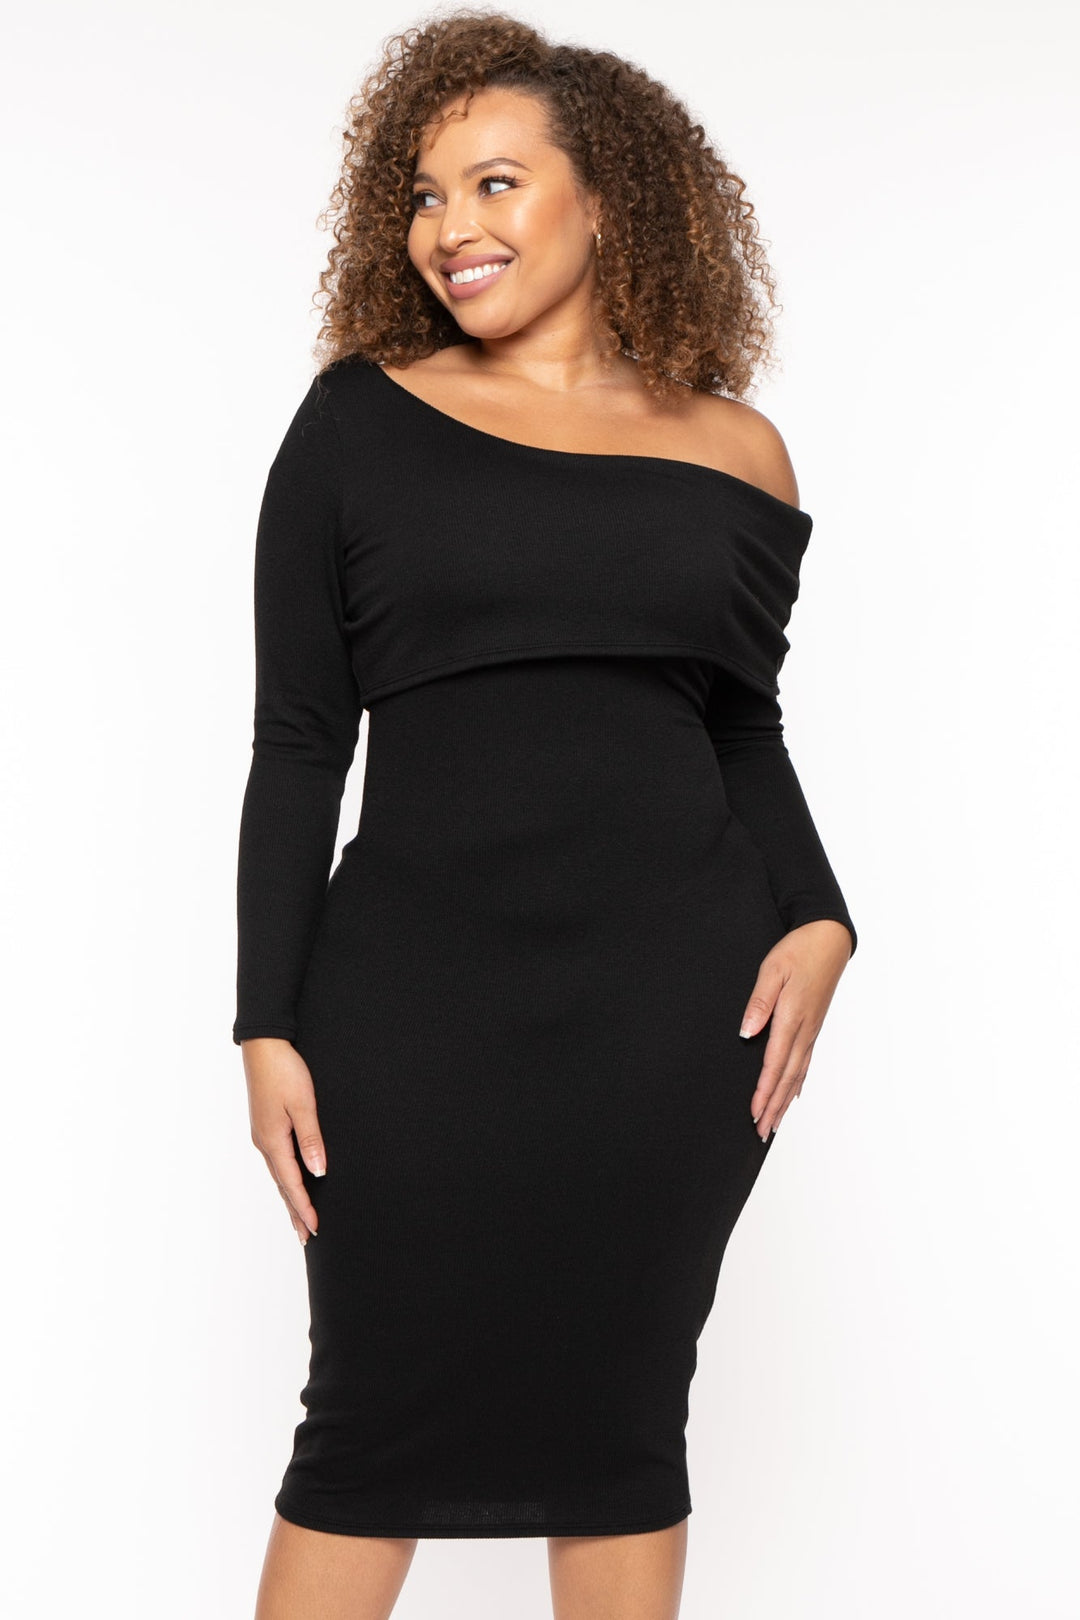 Curvy Sense Dresses 1X / Black Plus Size Cerise One Shoulder Dress- Black